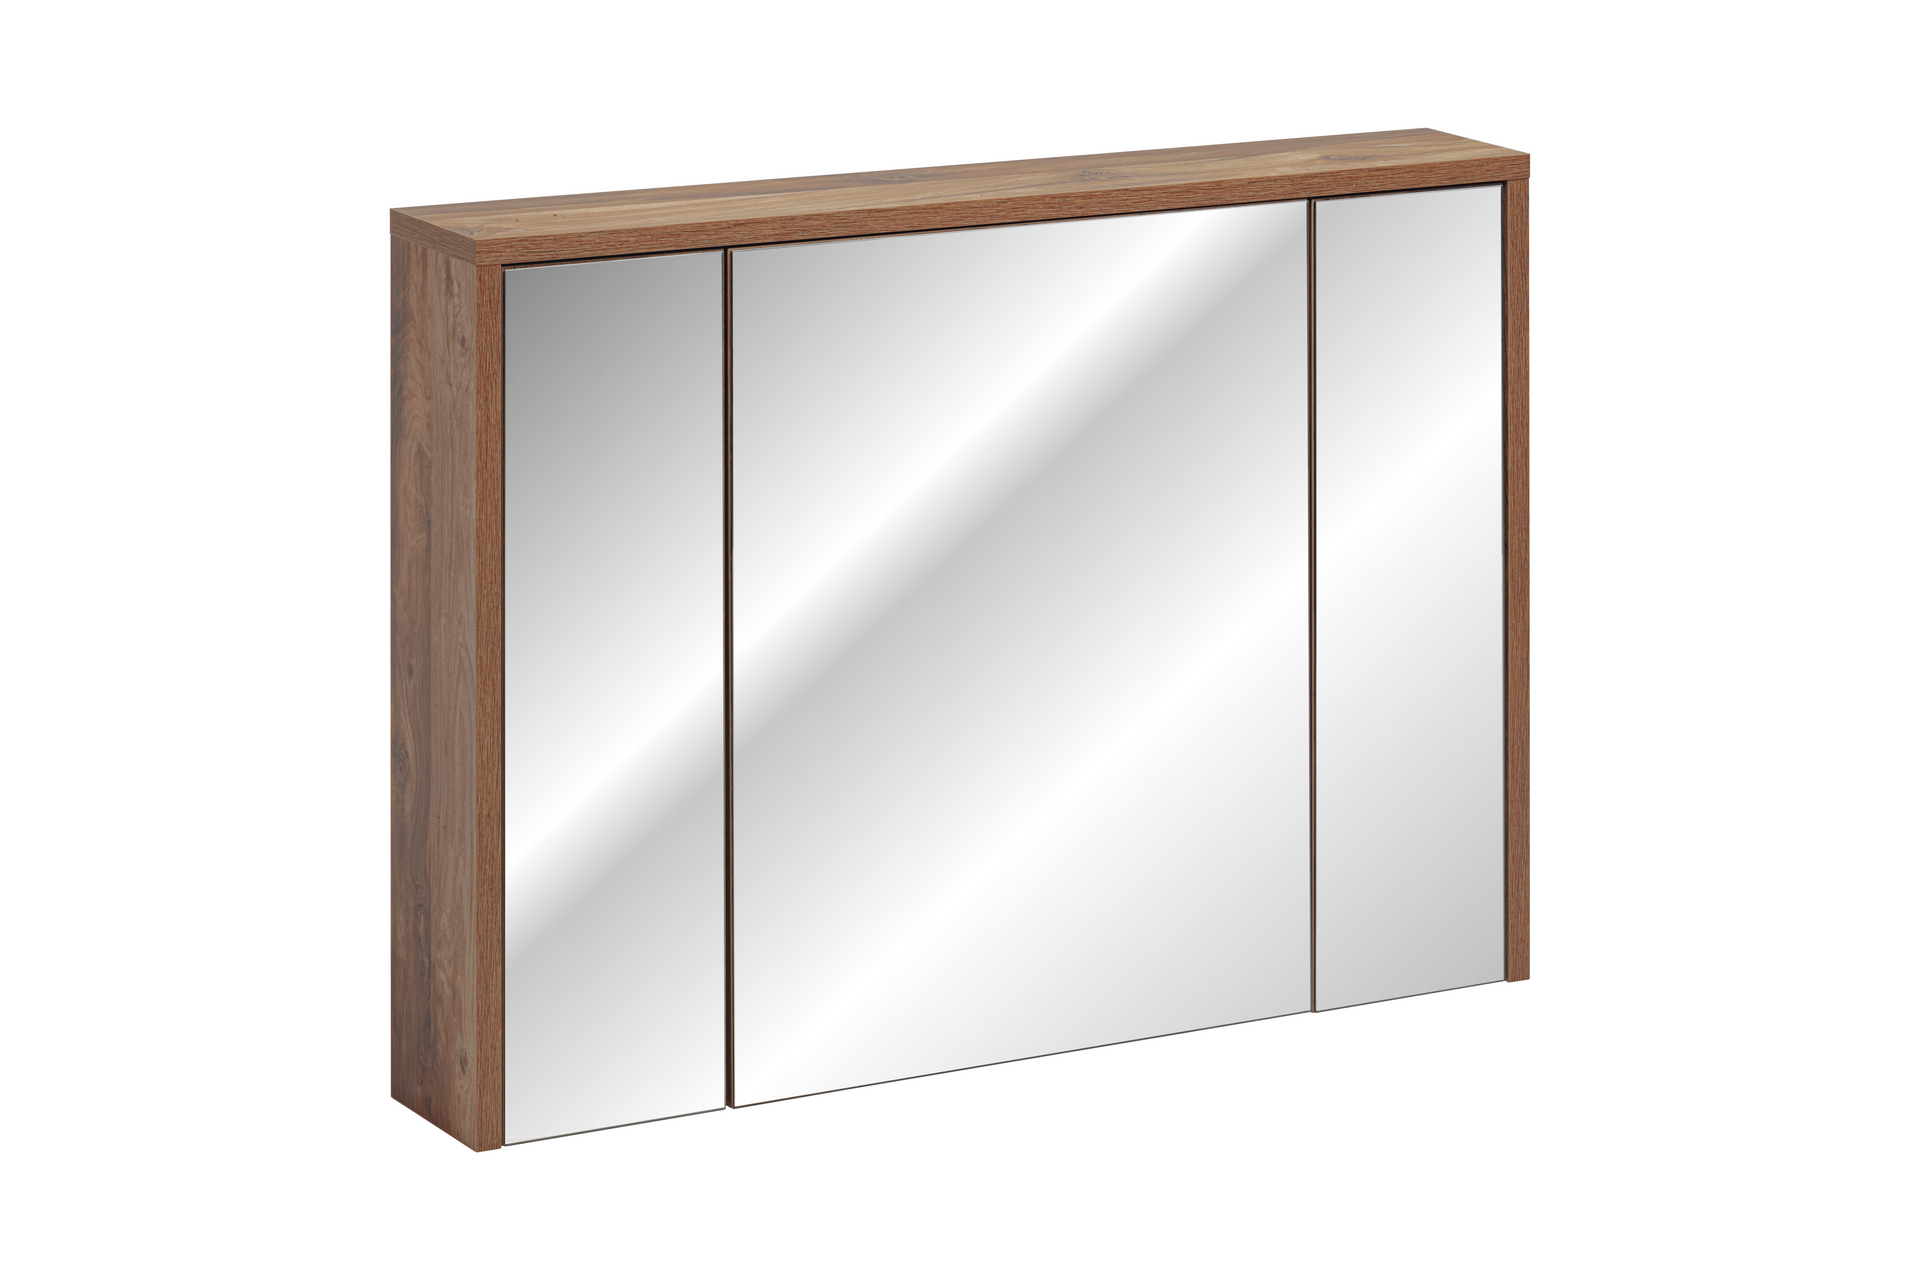 HAMPTON CONCRETE 842 -100 Szafka z lustrem 3D / Mirror cabinet 3D 100CM / CU-COC-834012 FSC MIX 70%